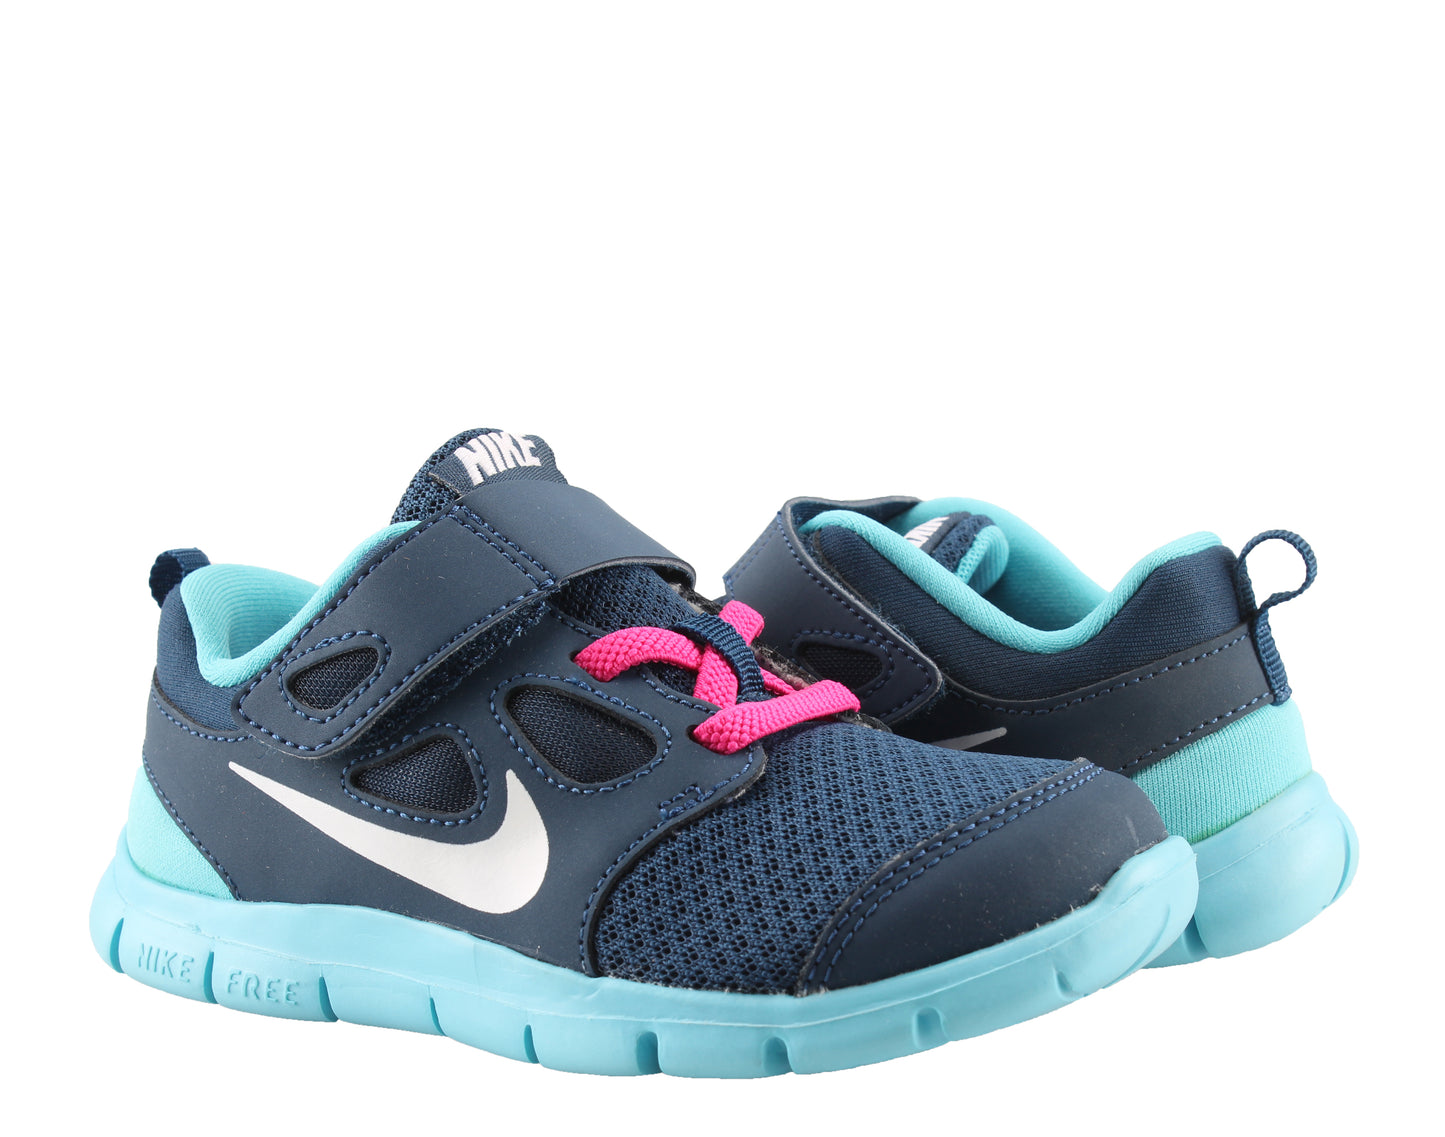 Nike Free 5 Toddler - (580595 401) - E42 - R1L1 - L/P